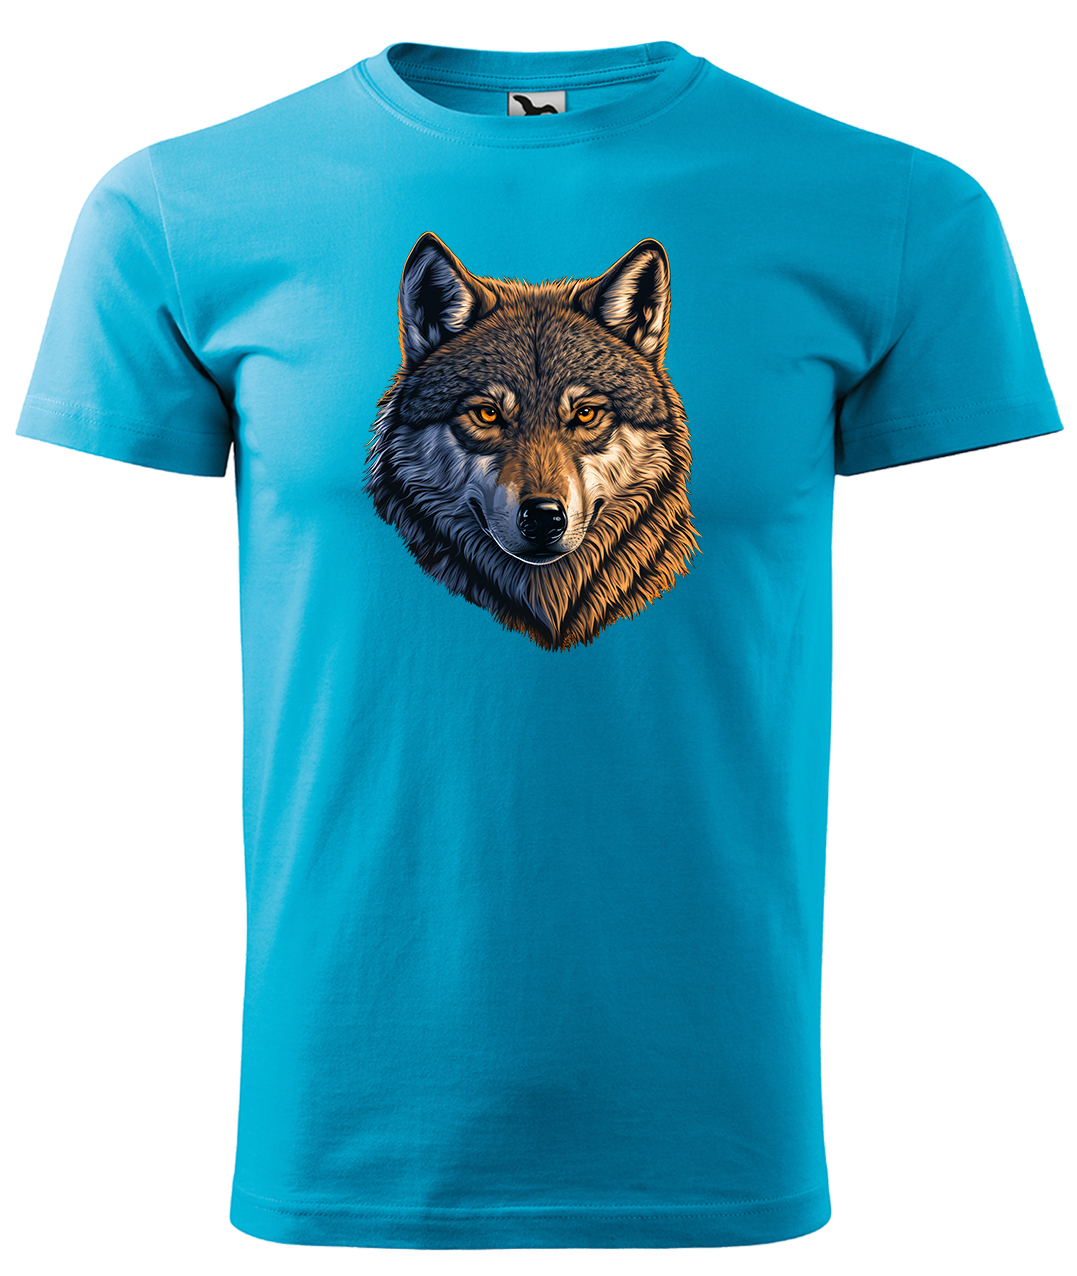 Dětské tričko s vlkem - Hlava vlka Velikost: 10 let / 146 cm, Barva: Tyrkysová (44), Délka rukávu: Krátký rukáv